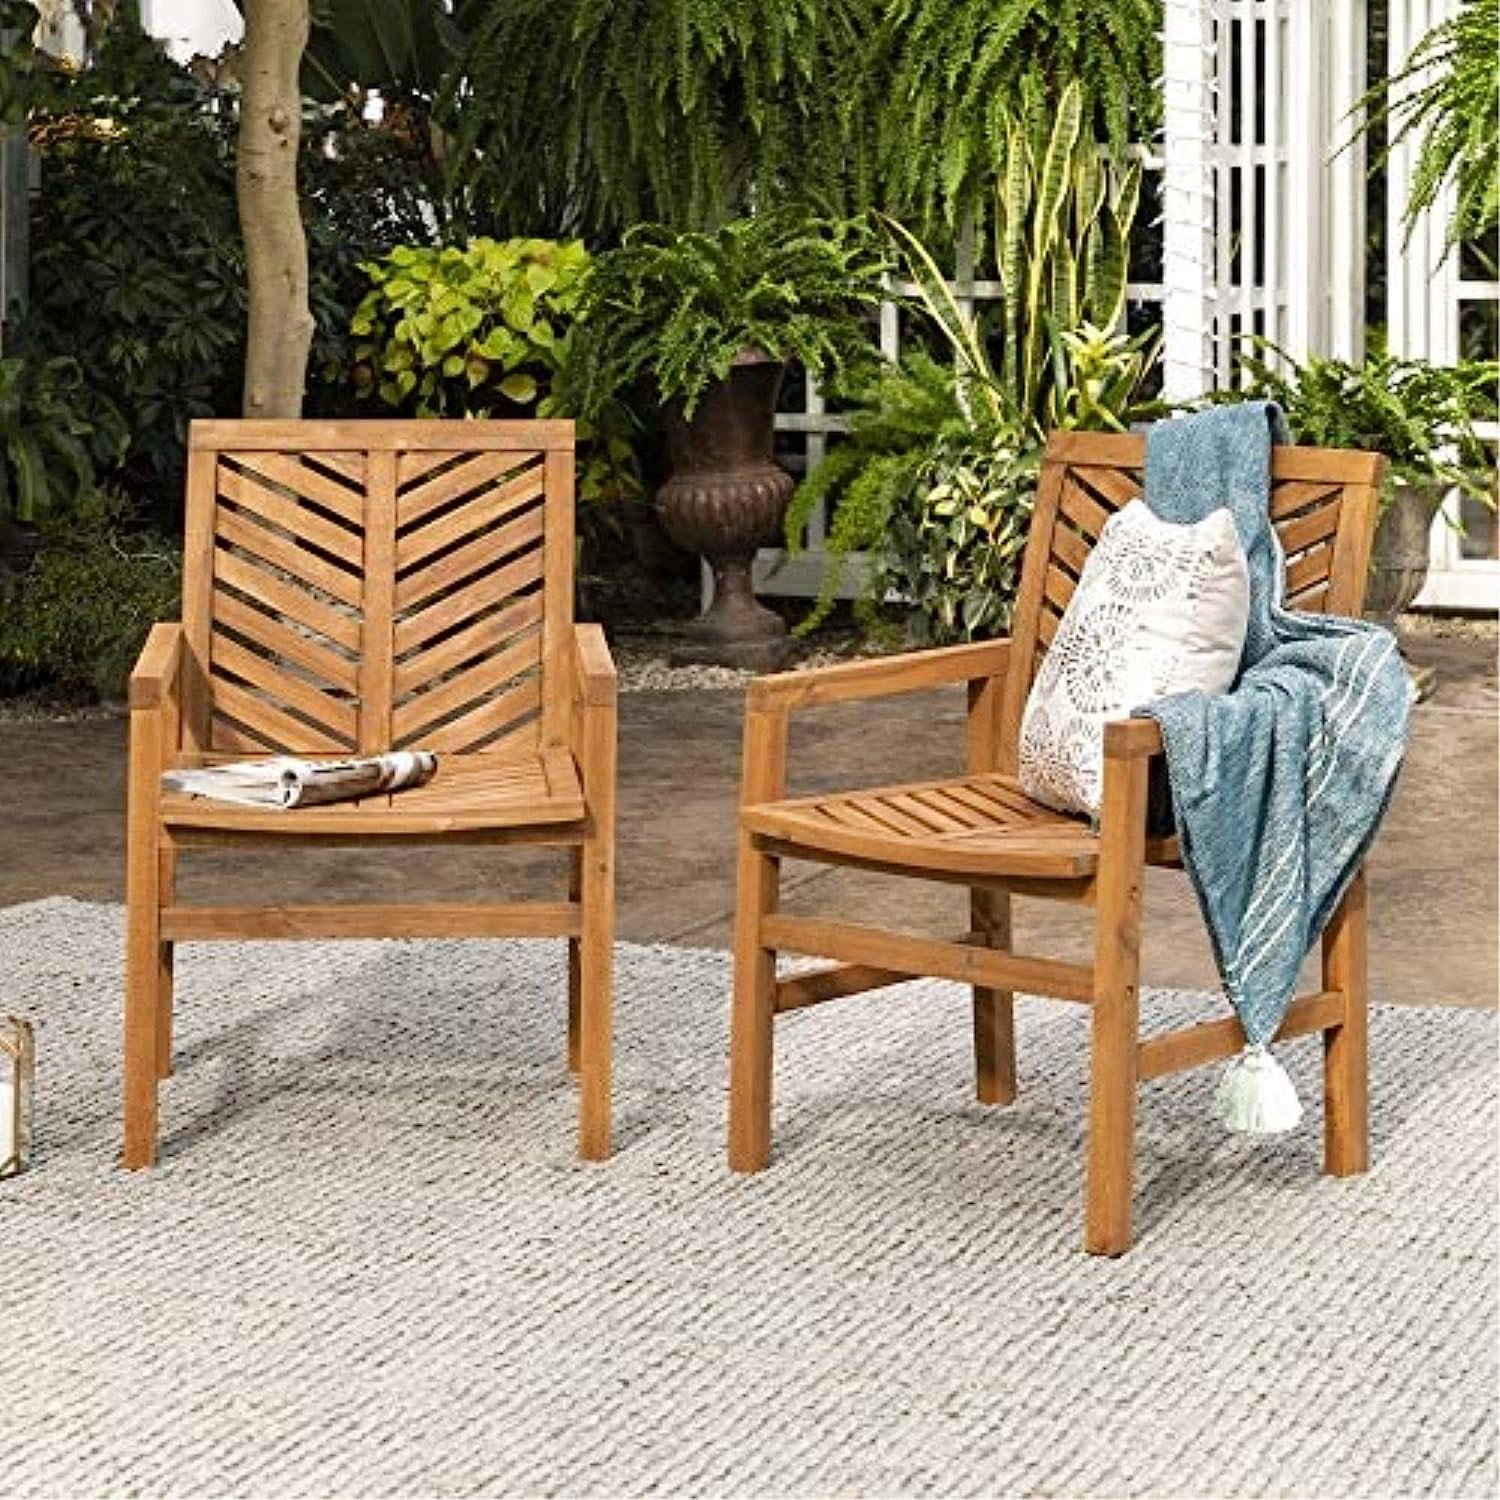 patio chair set.jpg